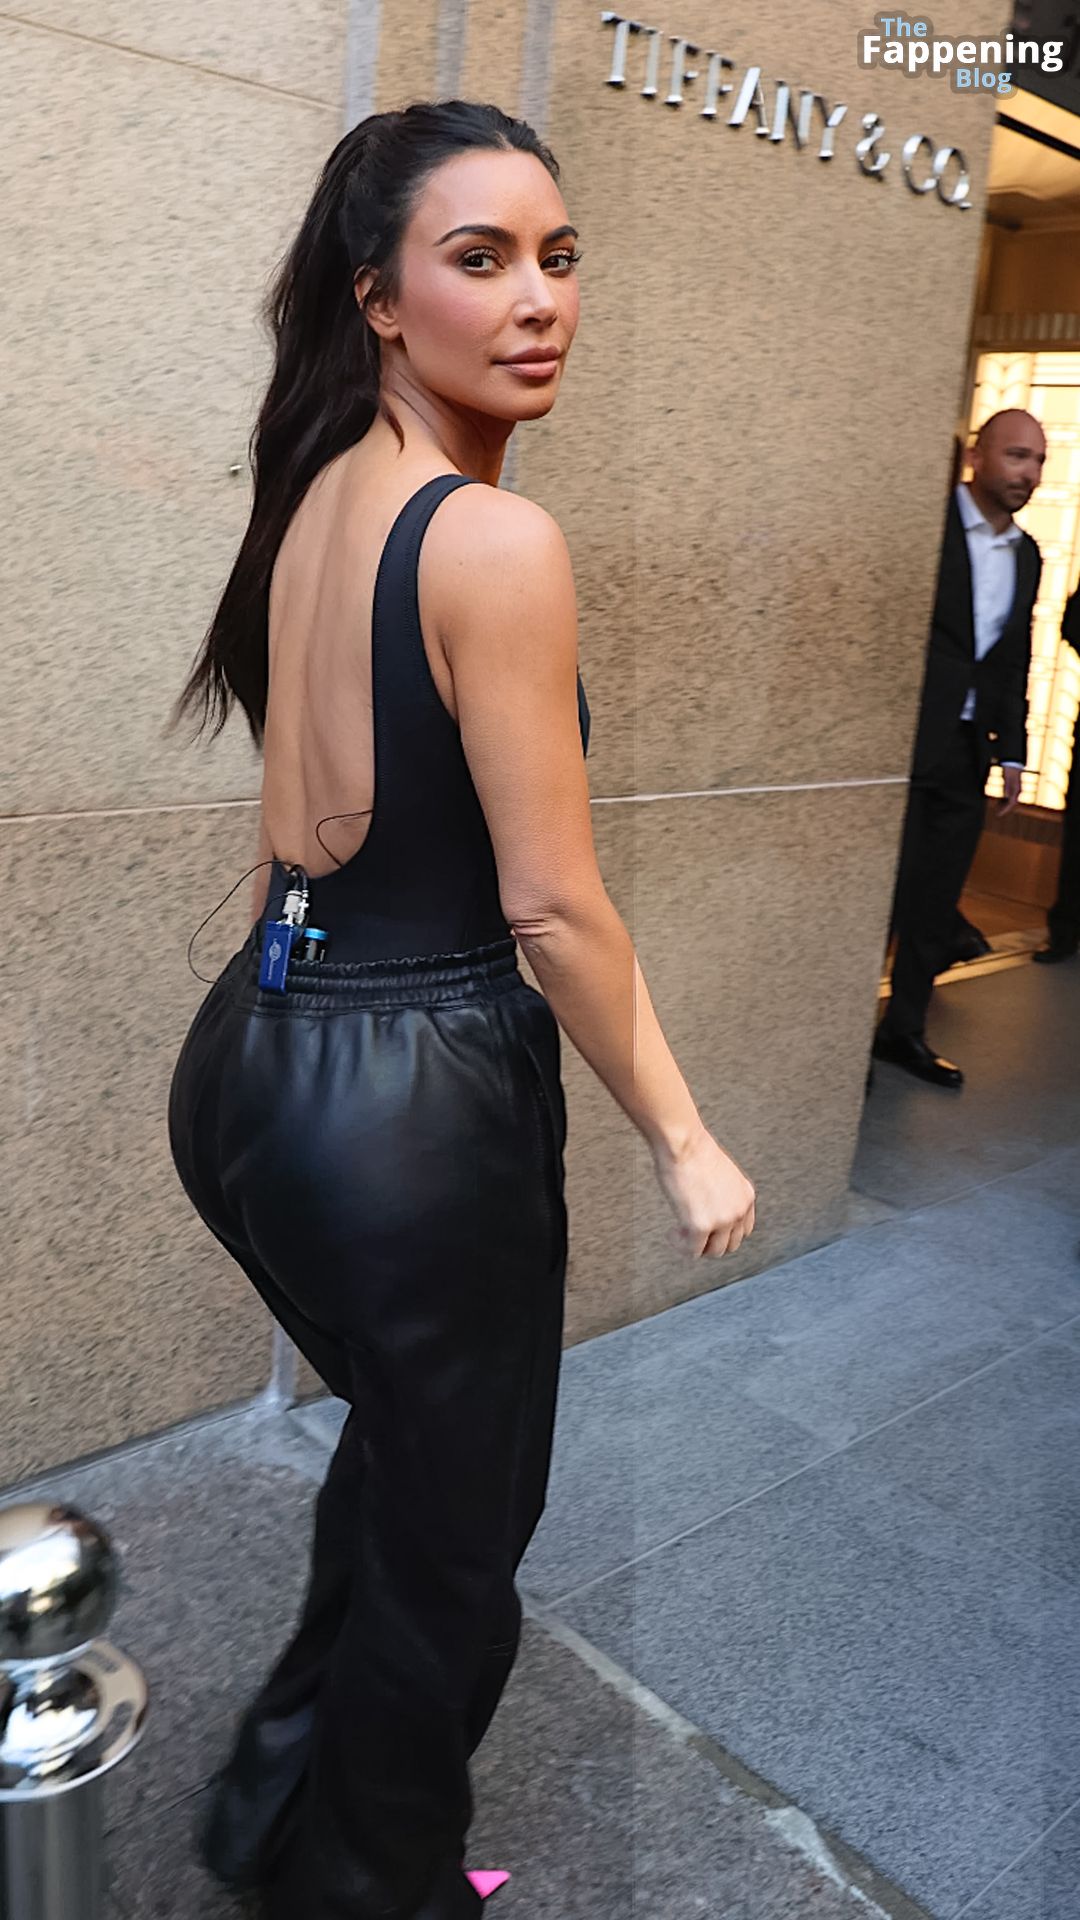 Kim-Kardashian-Sexy-The-Fappening-Blog-7-2.jpg